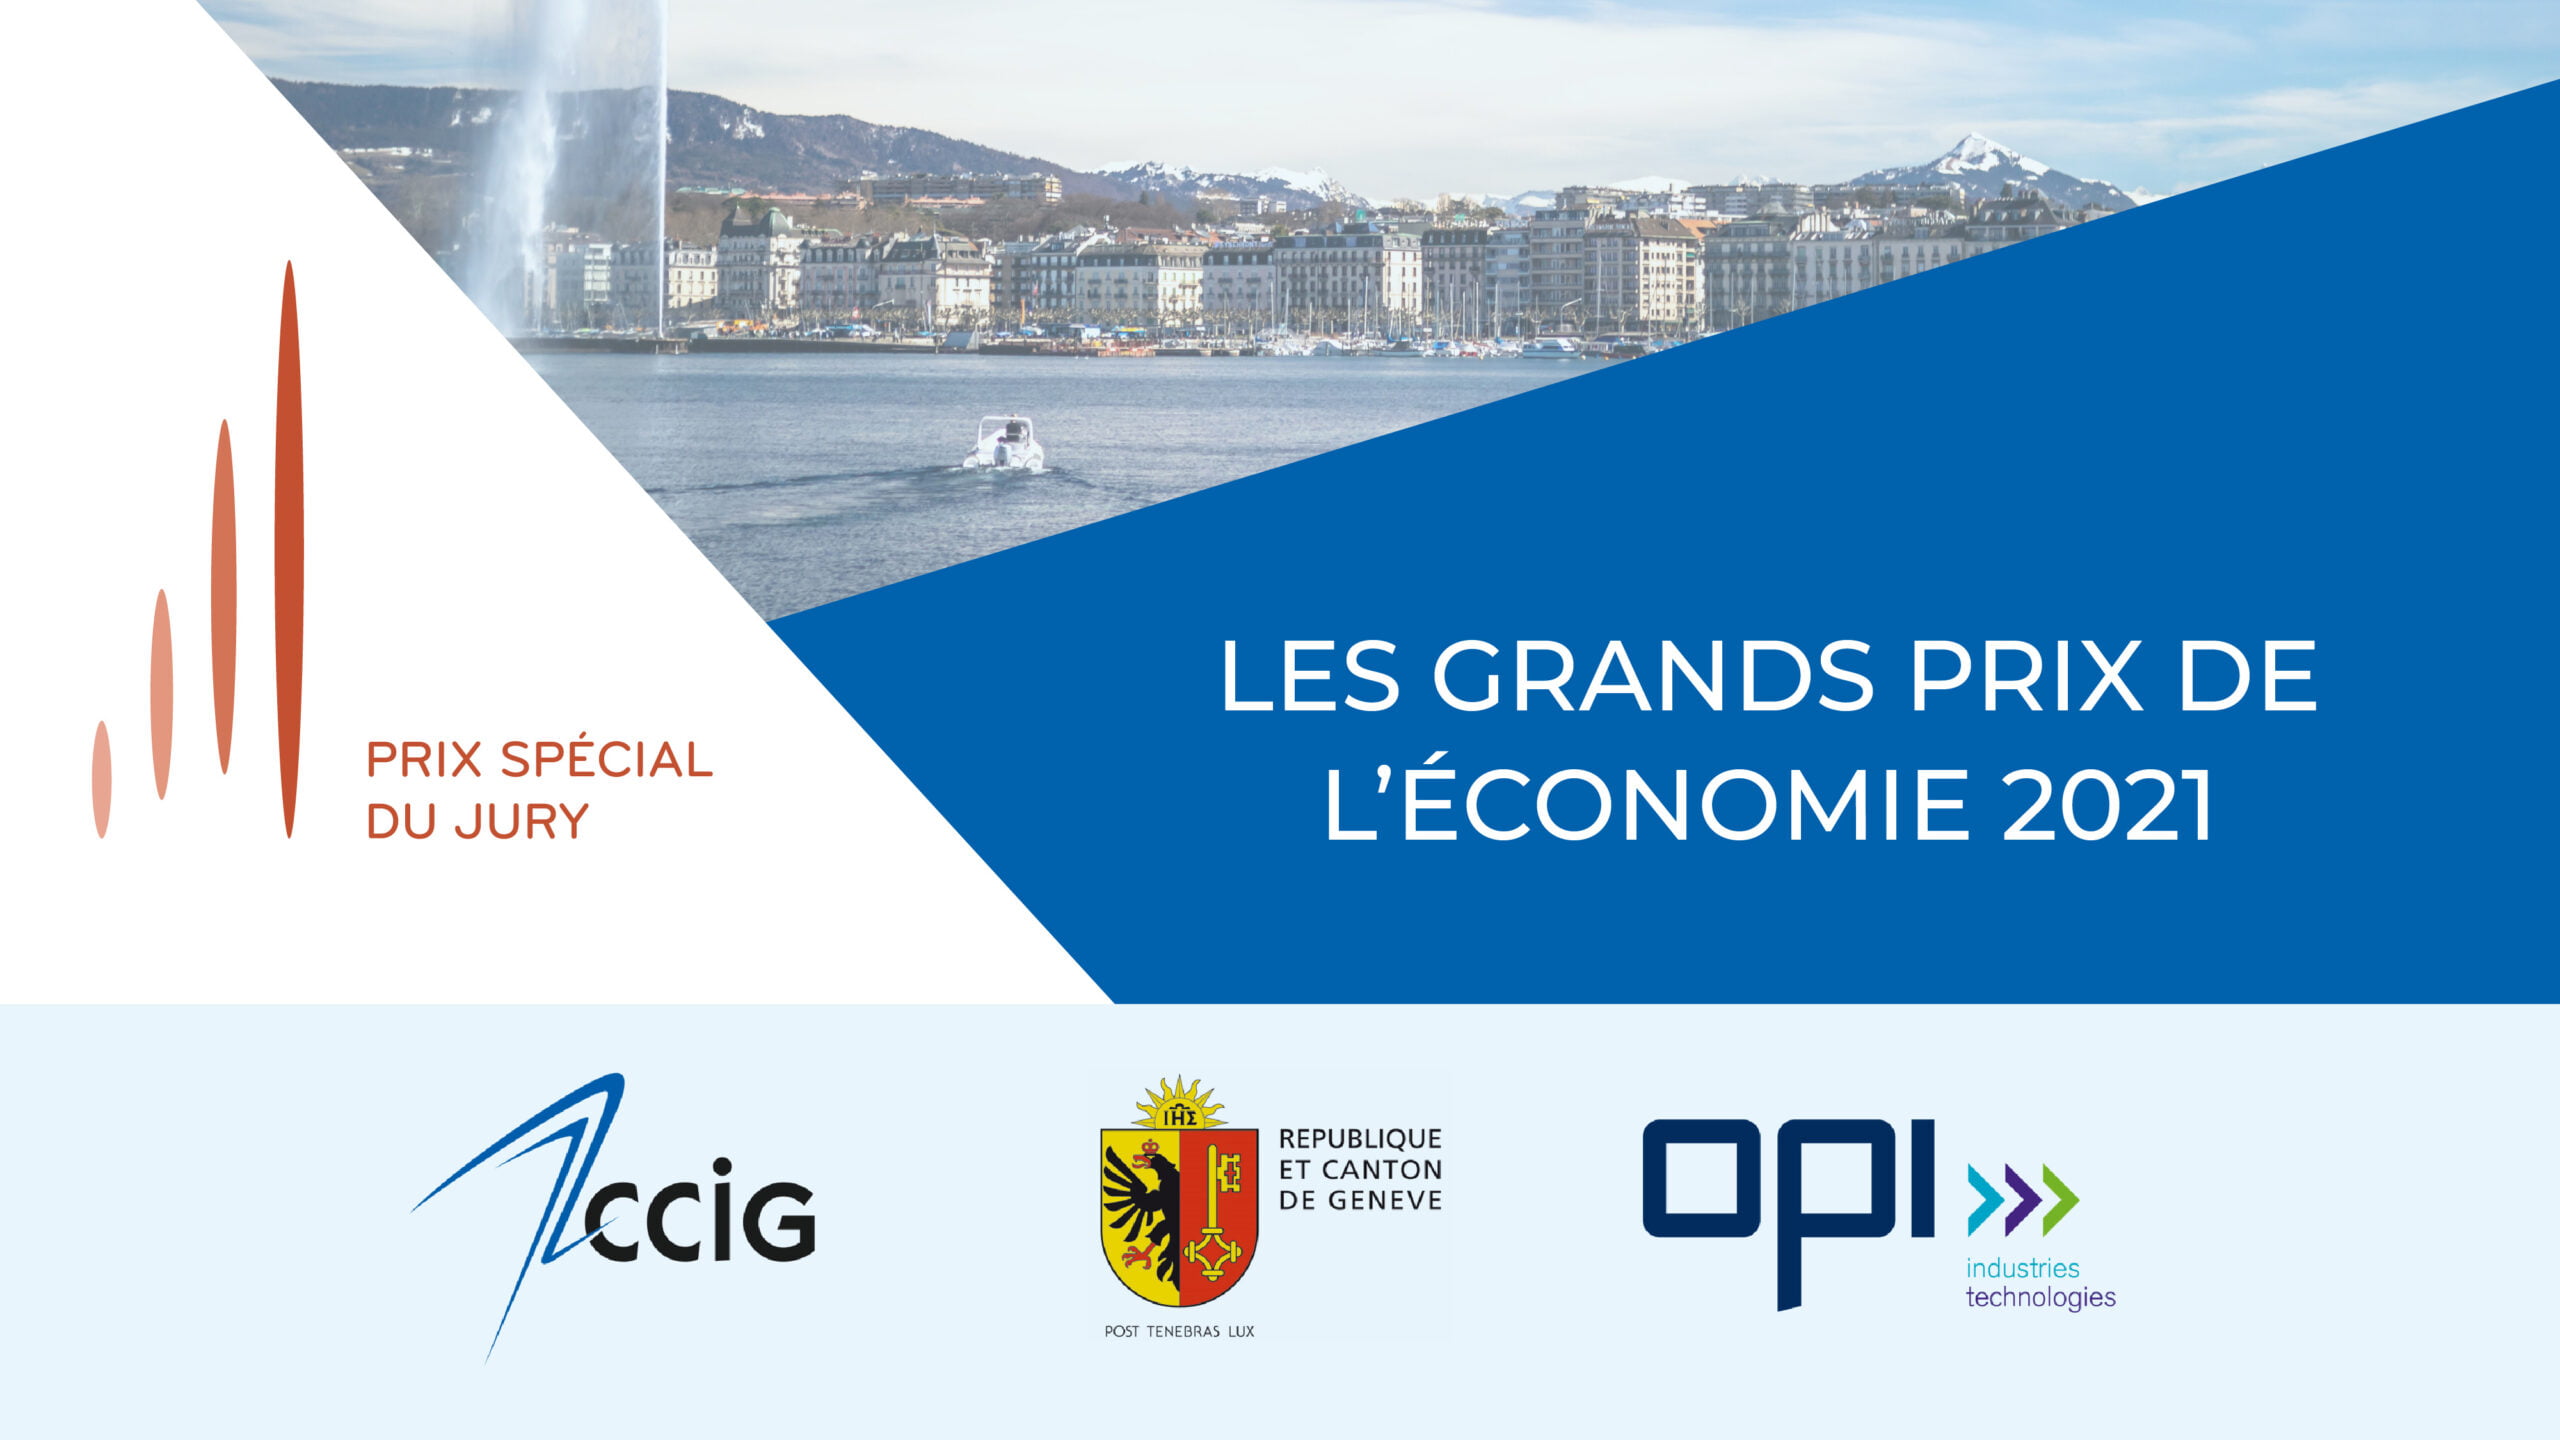 CyberPeace Institute efforts recognized by Les Grands Prix de l’économie